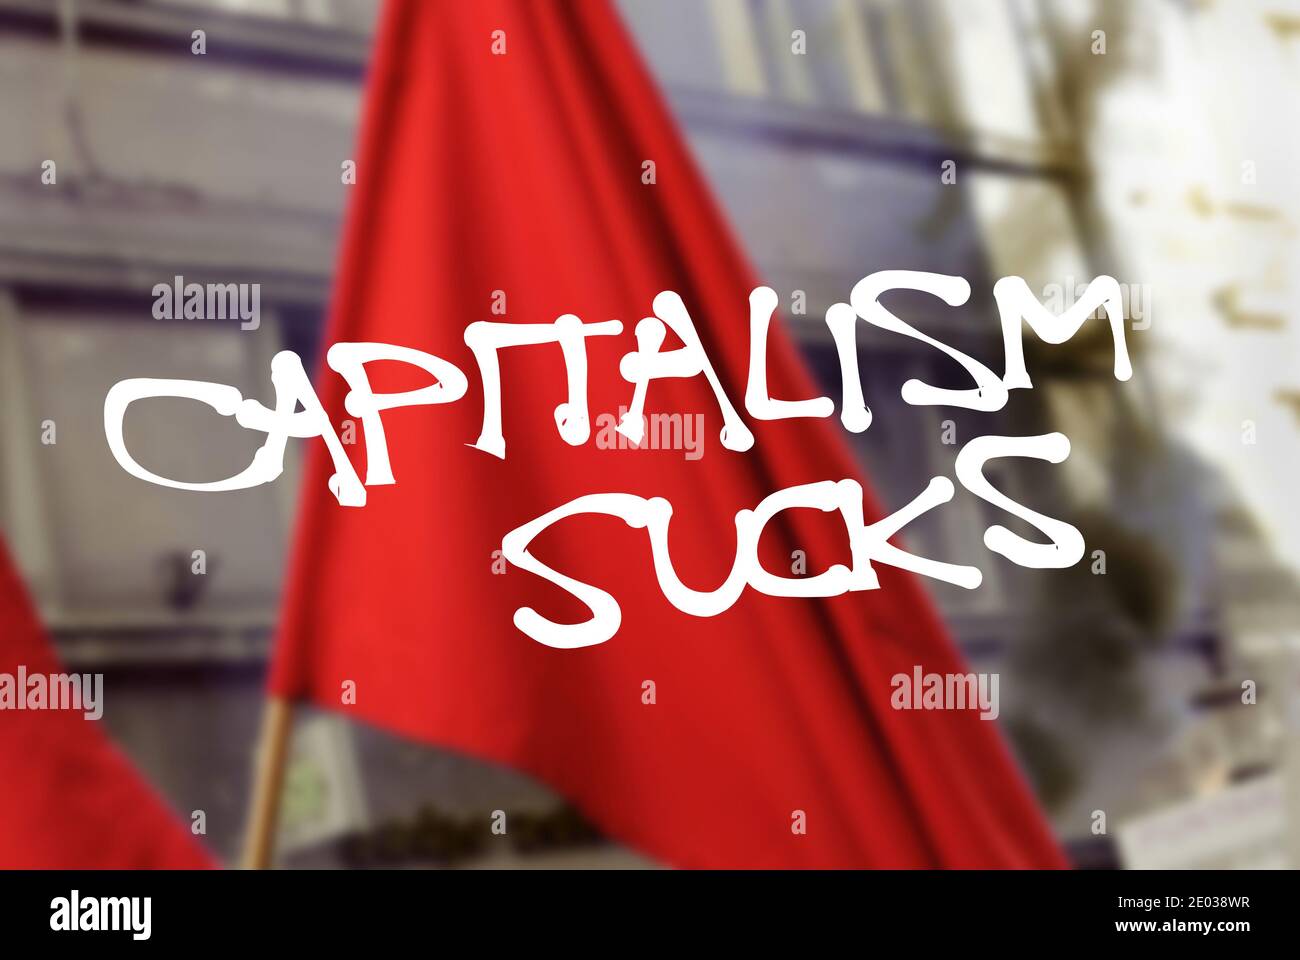 Kapitalismus saugt - revolutionärer Text über verschwommenes Foto der roten Flagge. Protest gegen kapitalistisches Wirtschaftssystem, freien Markt, Profitmachen und priva Stockfoto